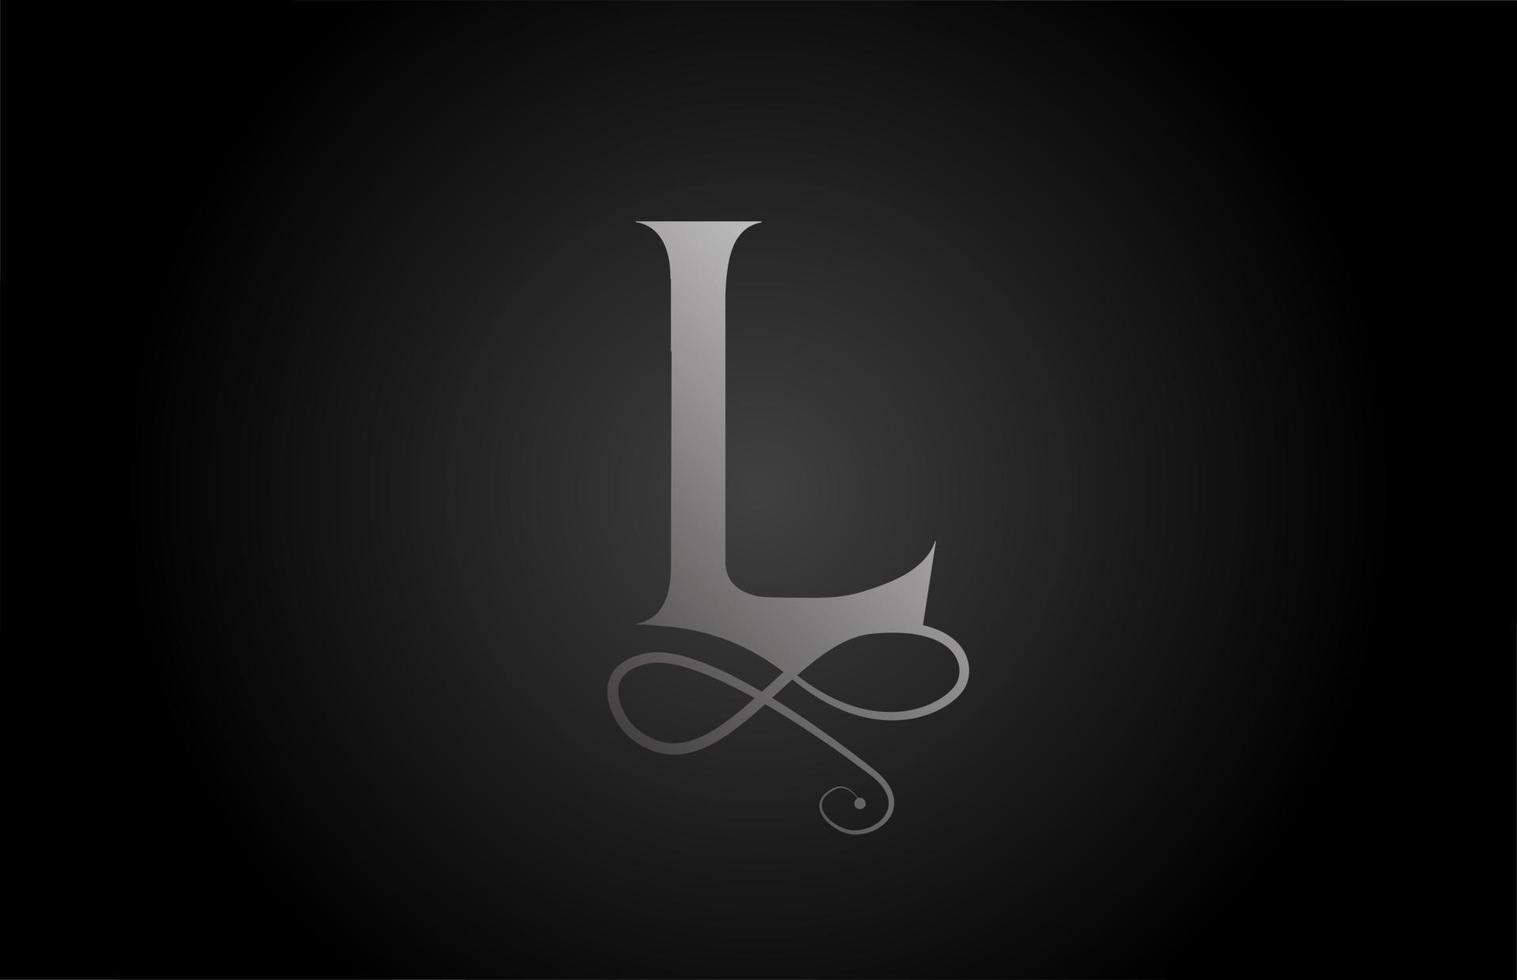 L blanco y negro elegante monograma ornamento alfabeto letra logo icono de lujo. Diseño de marca empresarial y corporativa para productos empresariales. vector